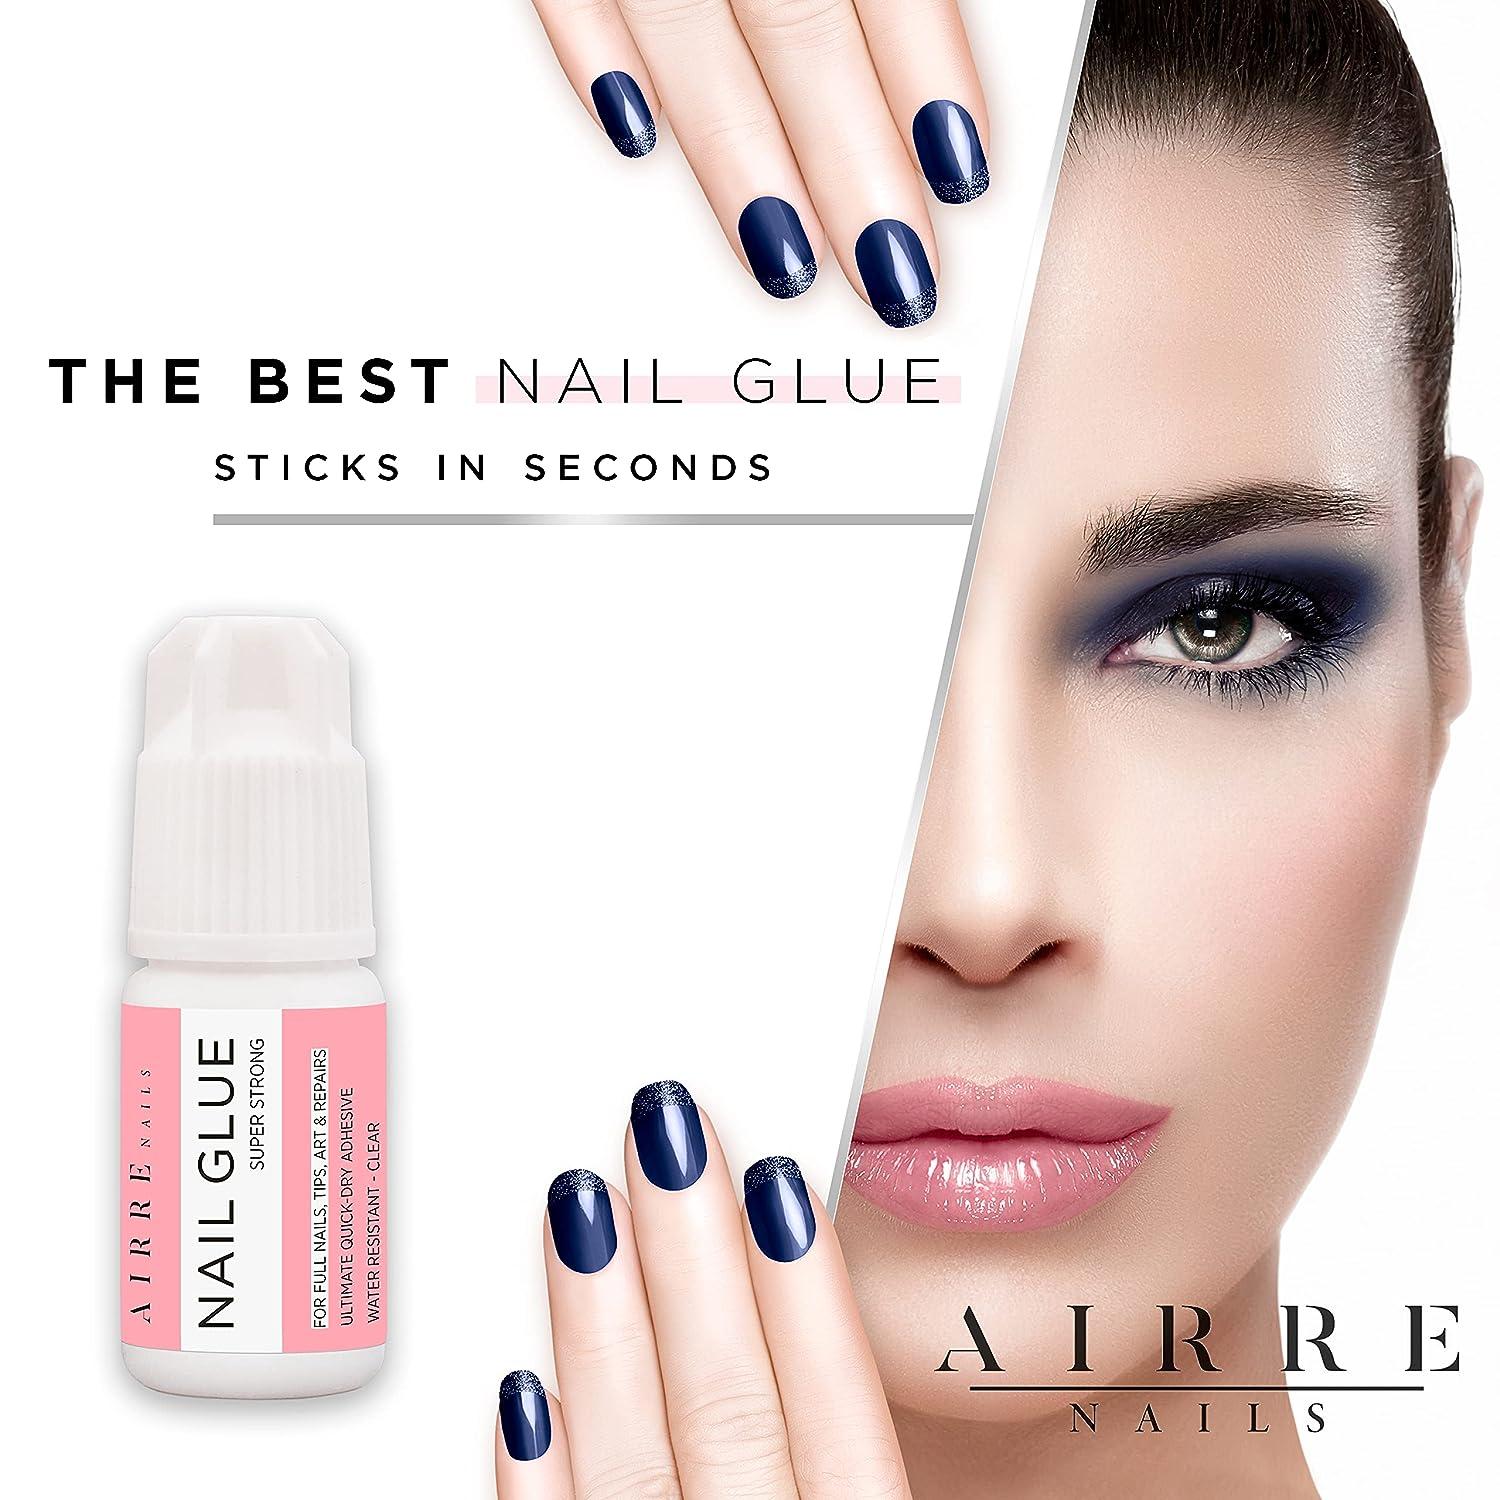  Extra Strong Nail Glue for Acrylic Nails, Nail Tips & Press-On  Nails (3ml) AIRRE Precision Tip Nail Glue & File for Glue-On Fake Nails,  Fix Broken Nail Repair Acrylic Nail Glue